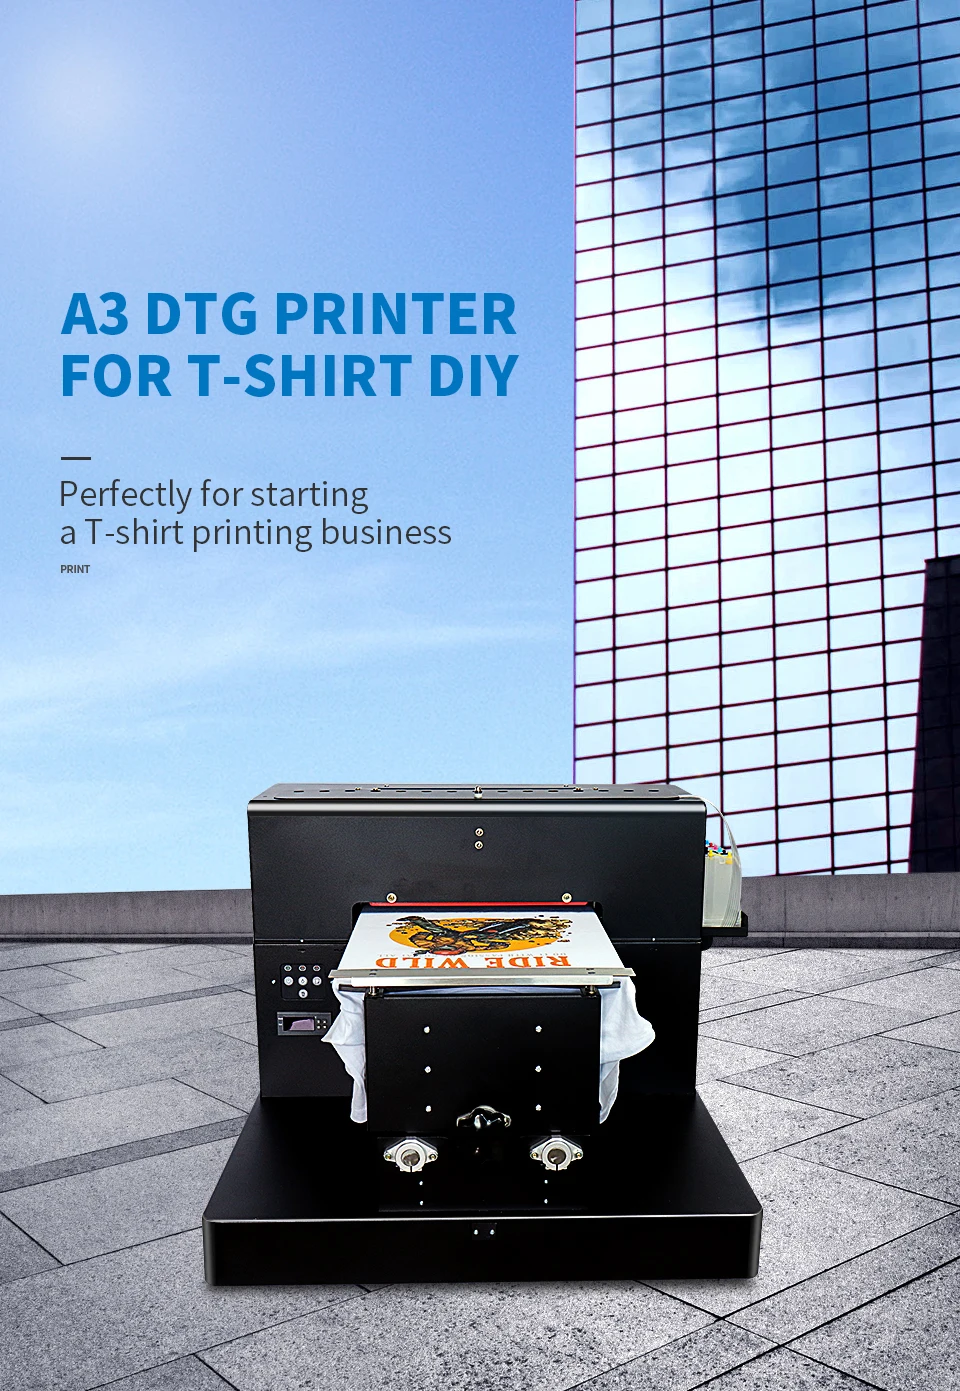 Colorsun A3 футболка планшетный принтер цифровая печатная машина для футболки принтер A3 цифровой текстильный принтер withe текстильные чернила